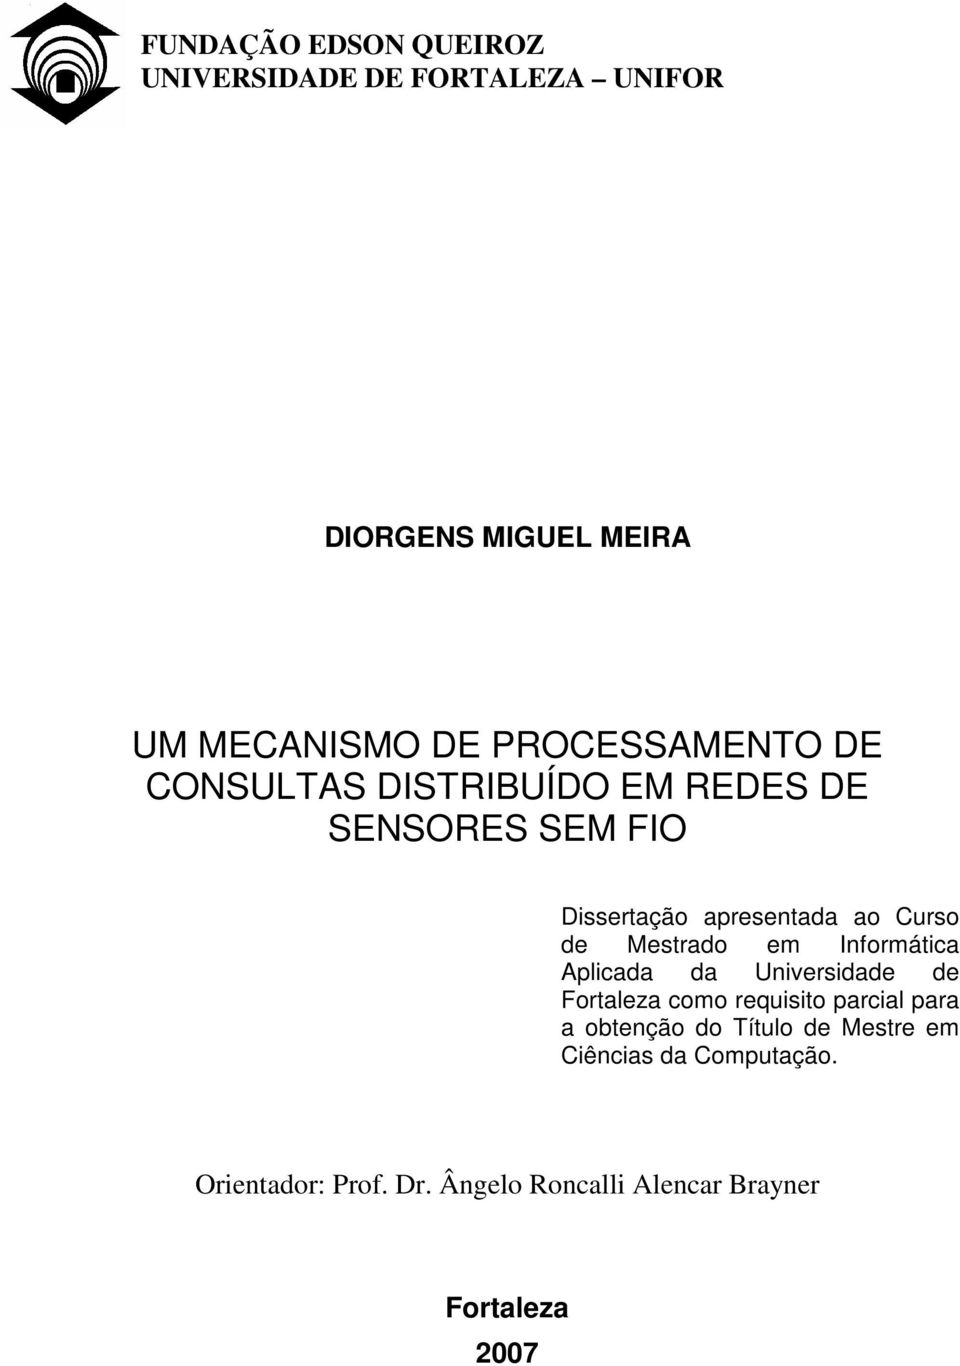 Mestrado em Informática Aplicada da Universidade de Fortaleza como requisito parcial para a obtenção do